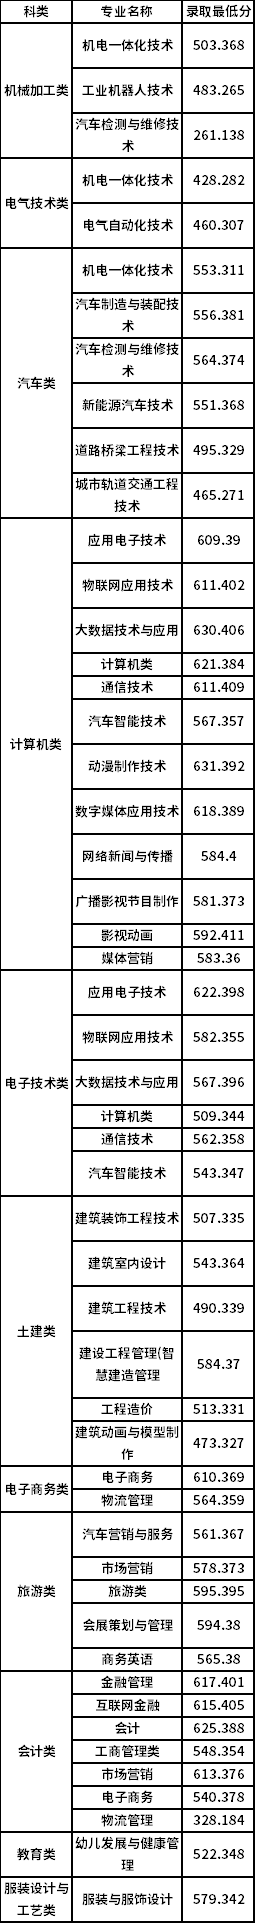 重庆工商职业学院2020年春季分类考试各专业最低录取分数